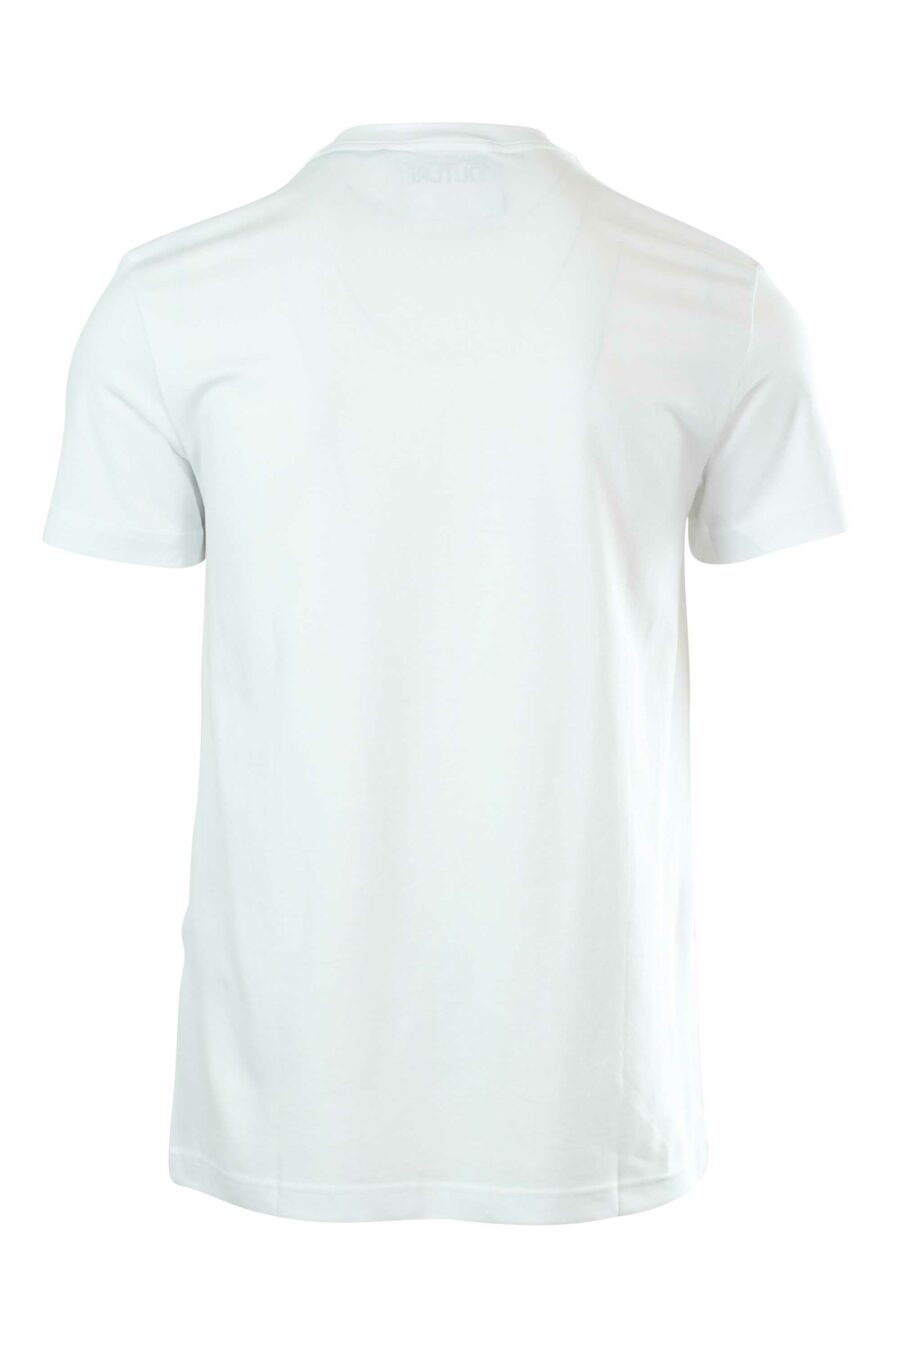 Camiseta blanca con logo en cuello - 8052019237092 2